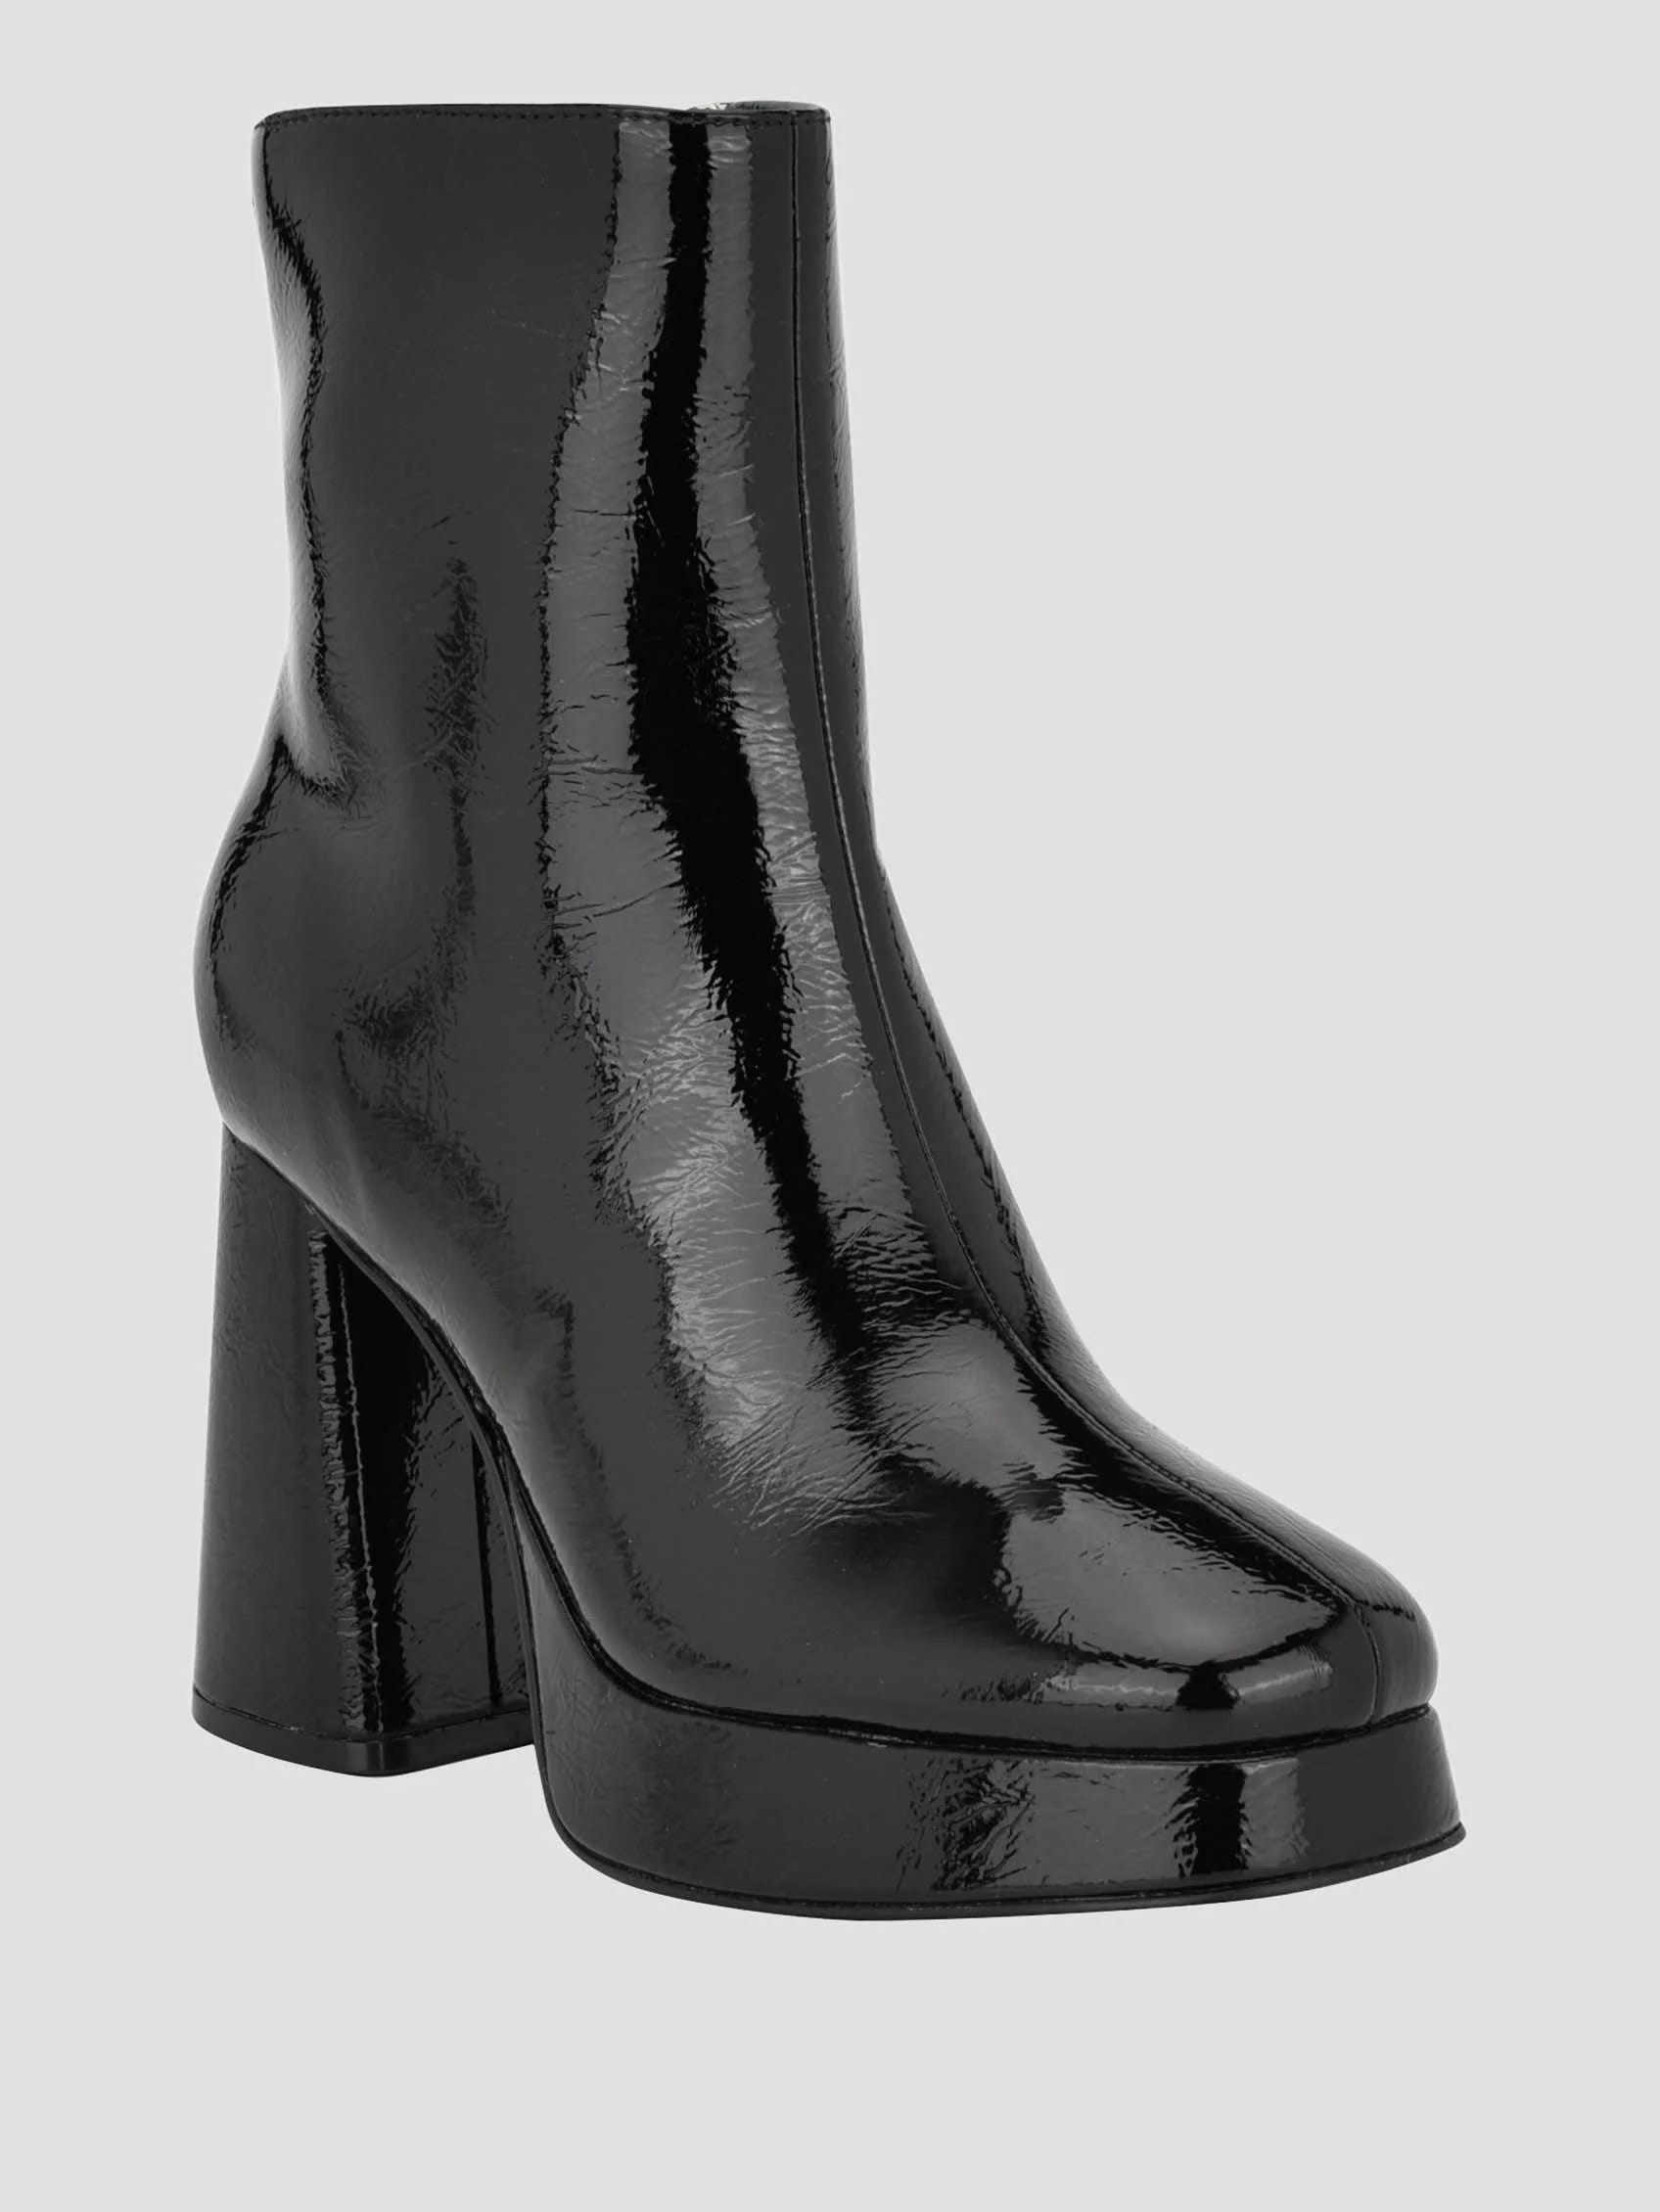 Polished Black Platform Heels for a Bold Look | Image